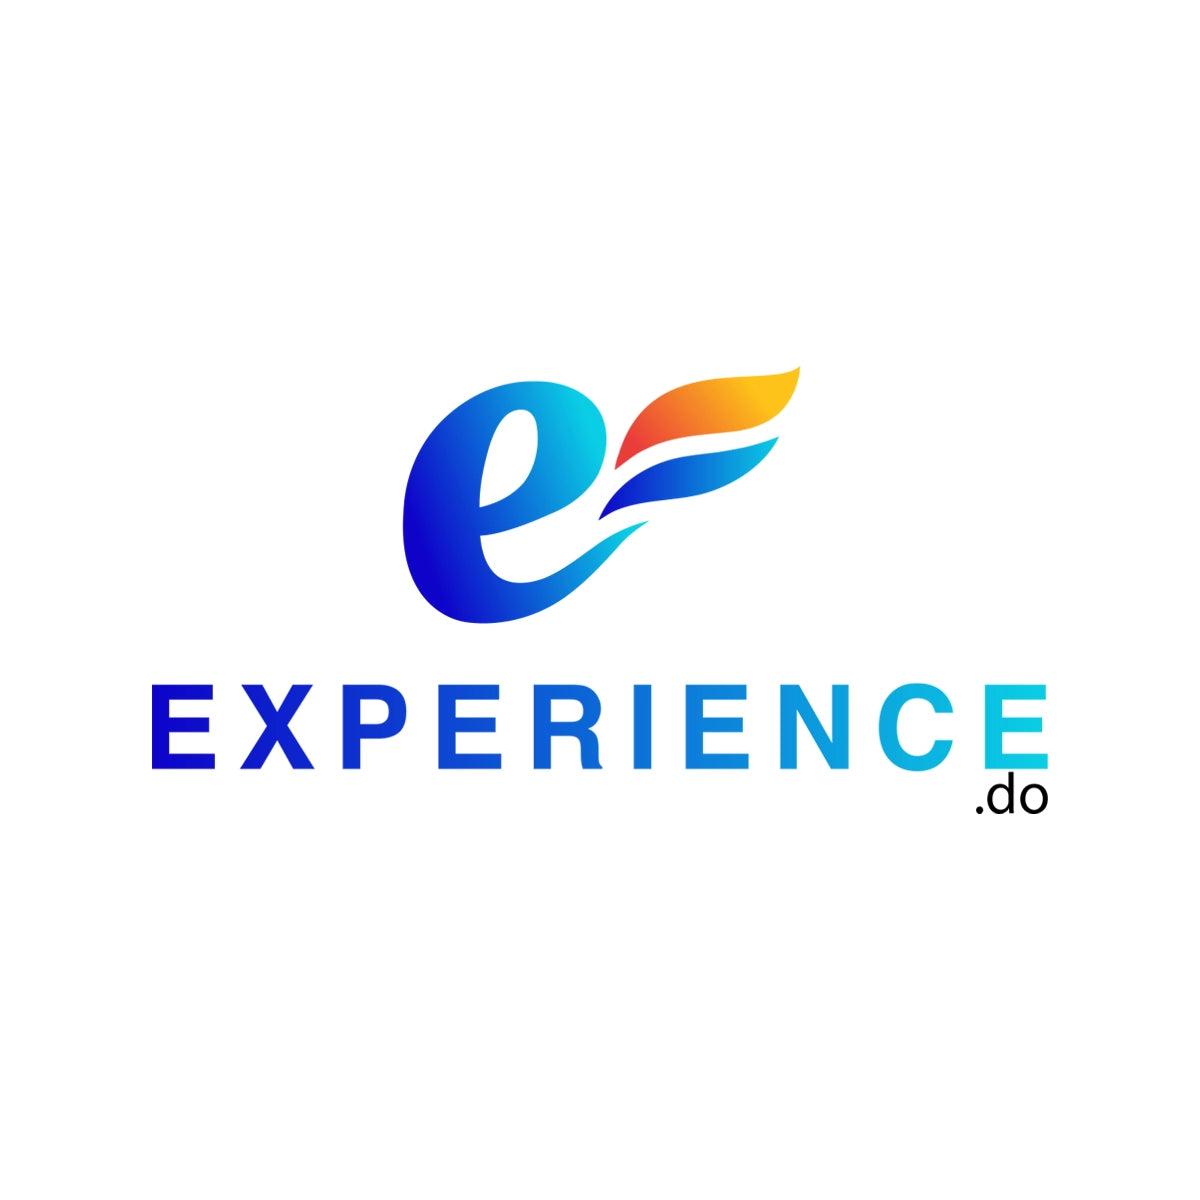 Experience.do